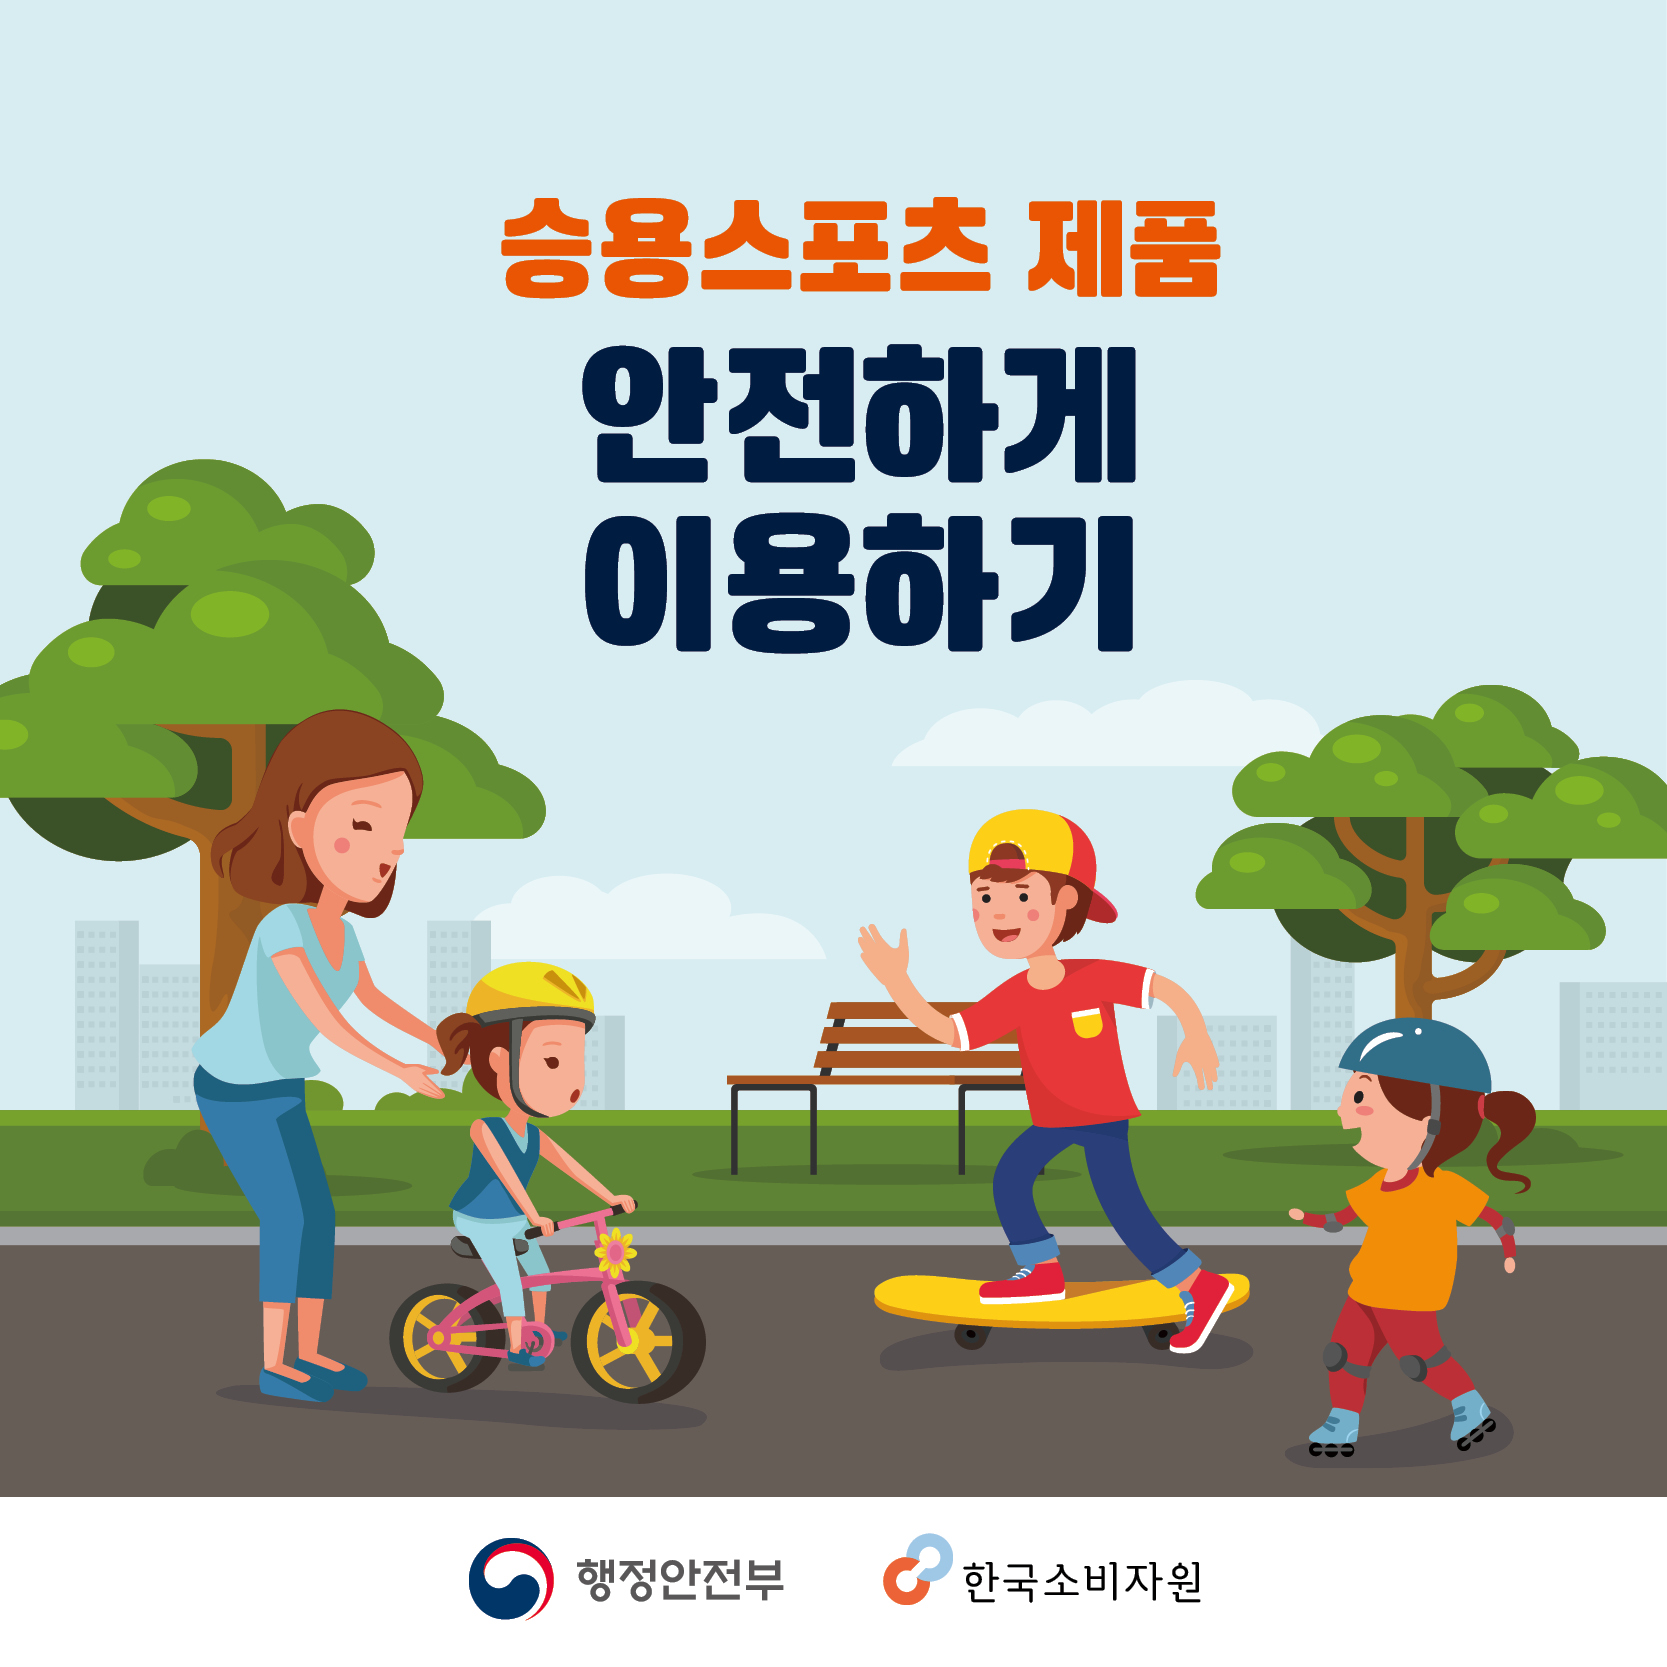 승용스포츠 제품 안전하게 이용하기 행정안전부 한국소비자원